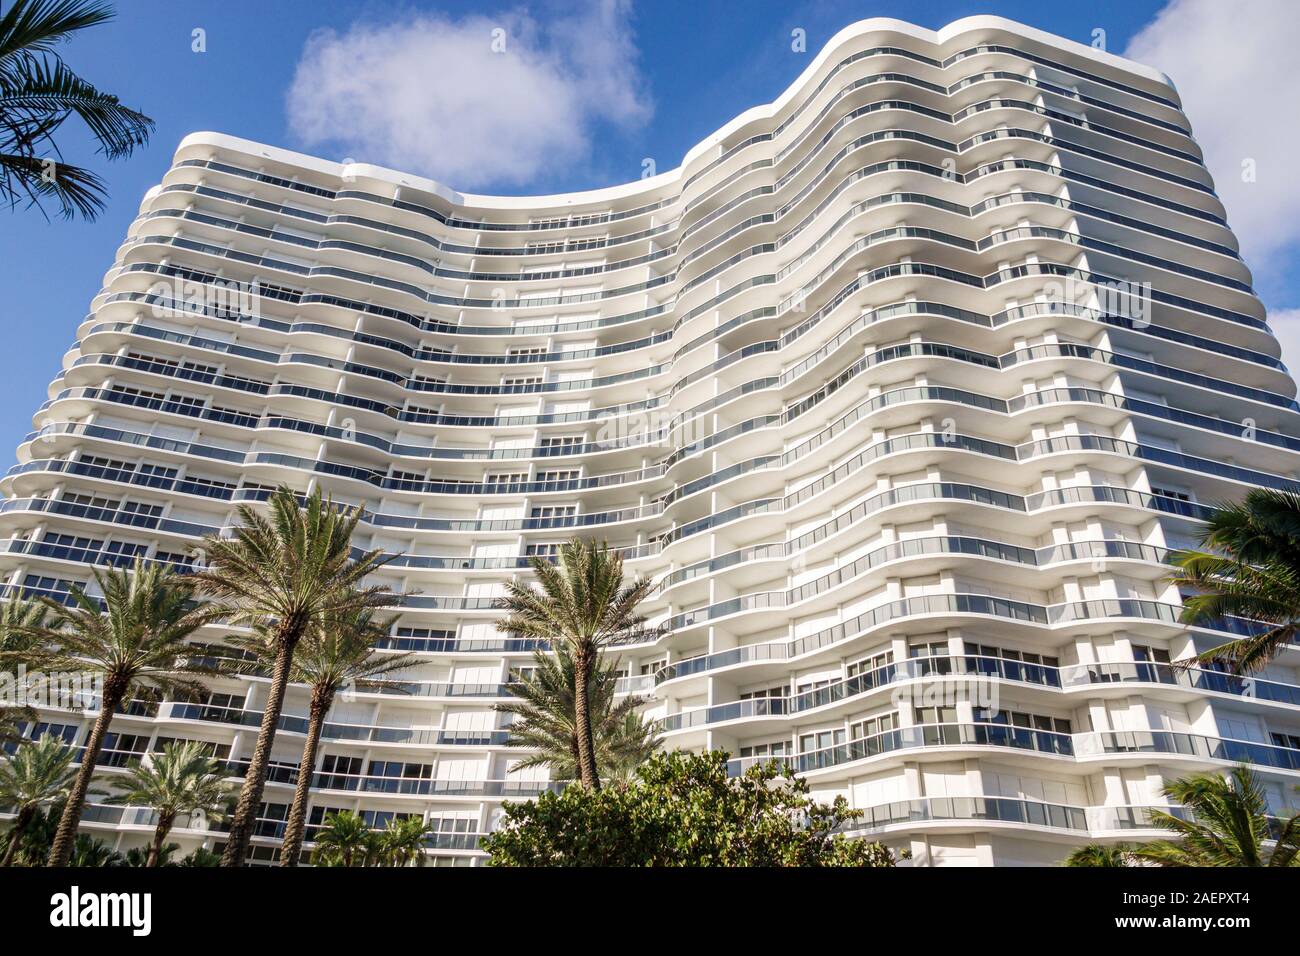 Miami Florida, Bal Harbour, Collins Avenue, Majestic Towers, condominio, alto, immobile residenziale, esterno dell'edificio, persiane uragano, balconi, Foto Stock